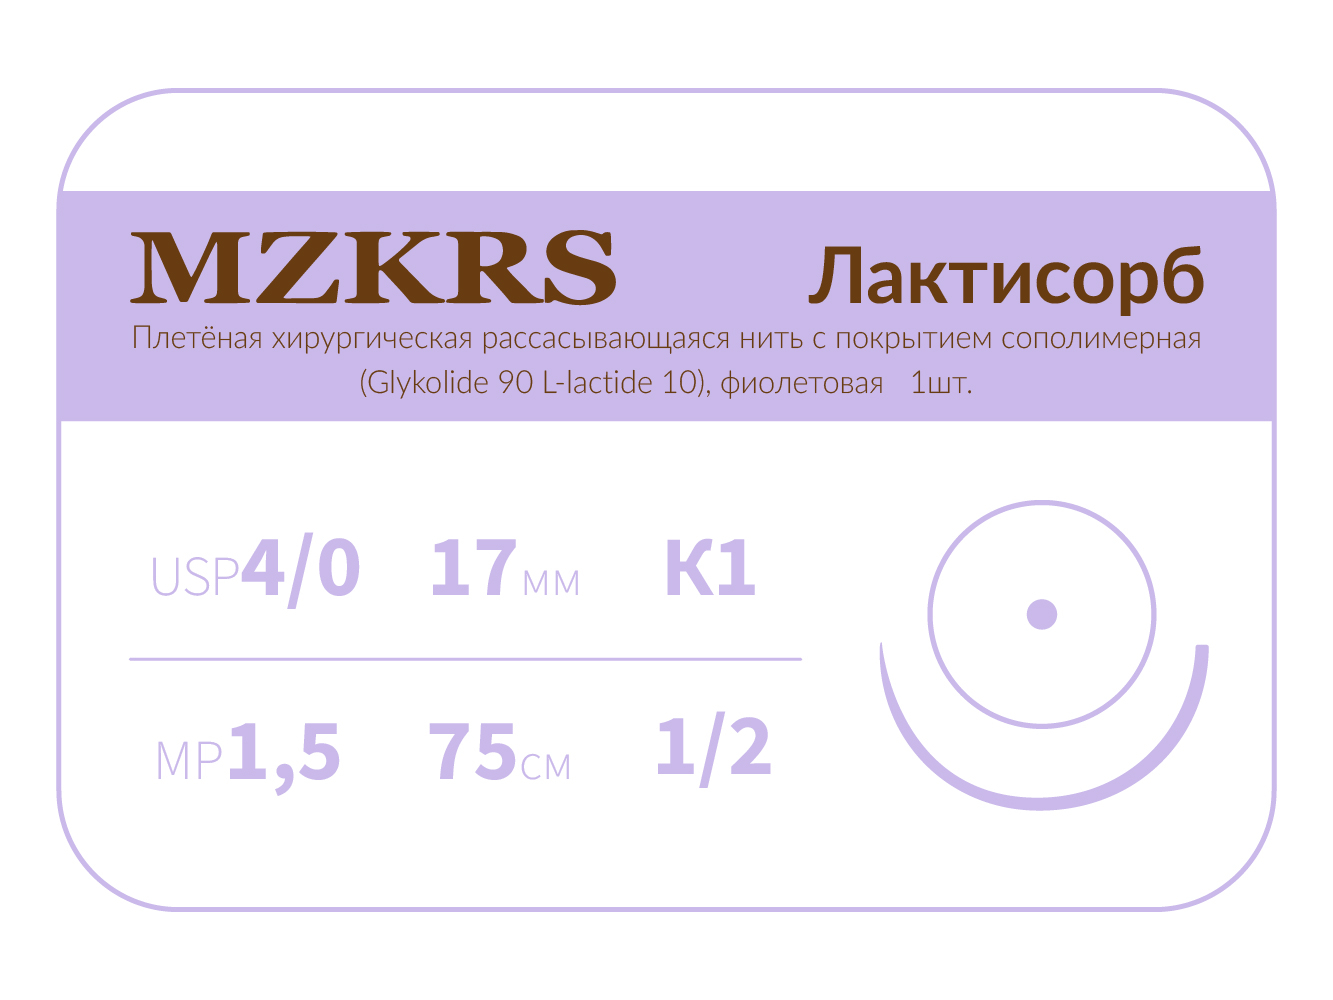 1712К1-Premium-4/0 (1.5)75  ПГЛ ЛАКТИСОРБ хирургическая нить сополимерная, MZKRS (Россия)